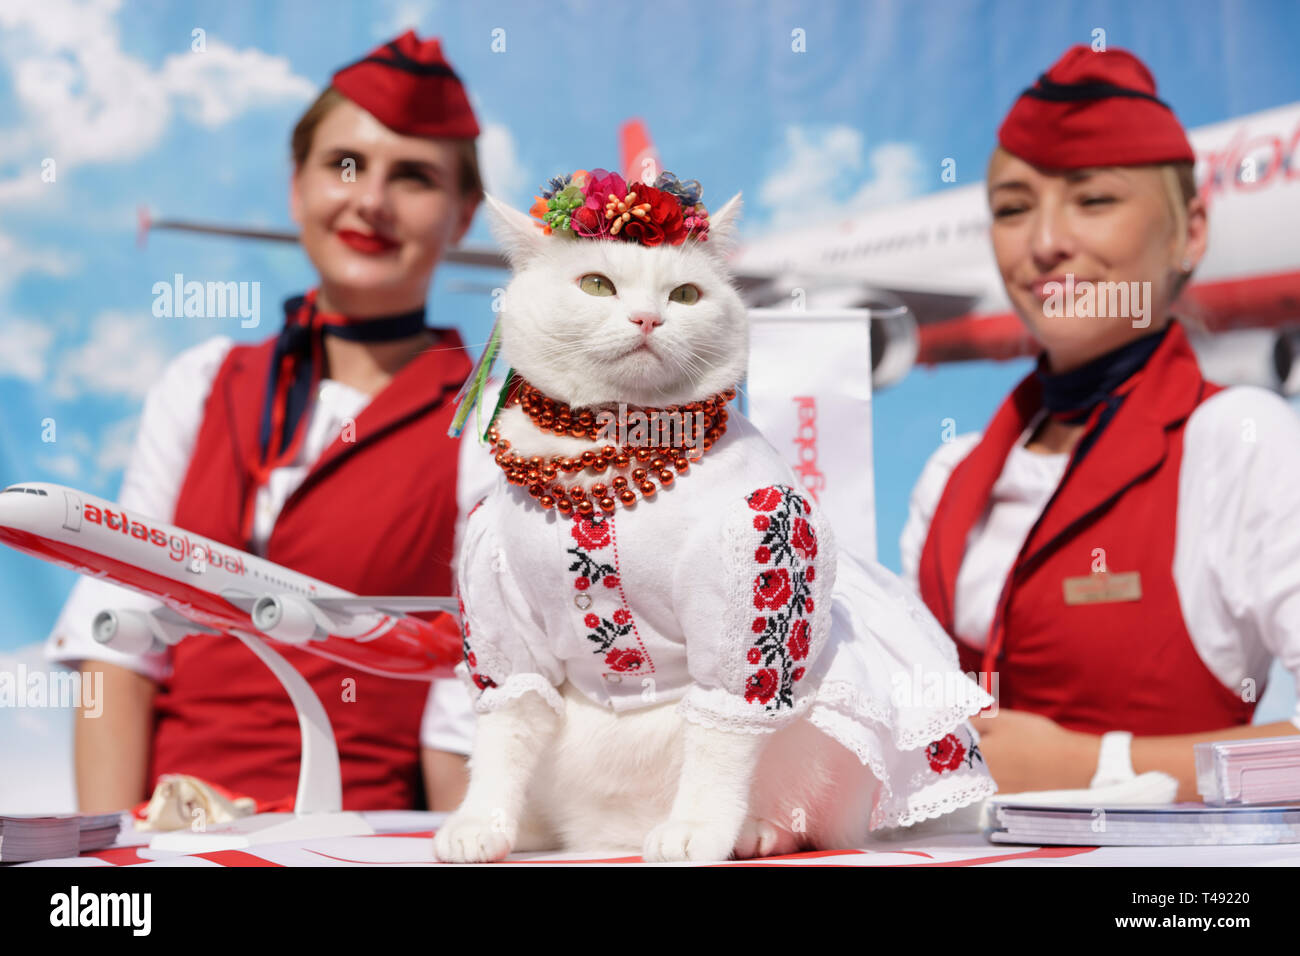 Kiev, Ukraine - 1 octobre 2016: Chat blanc habillé en costume national ukrainien et headaddress de fleur en promotion de la compagnie aérienne turque Atlas Global Banque D'Images